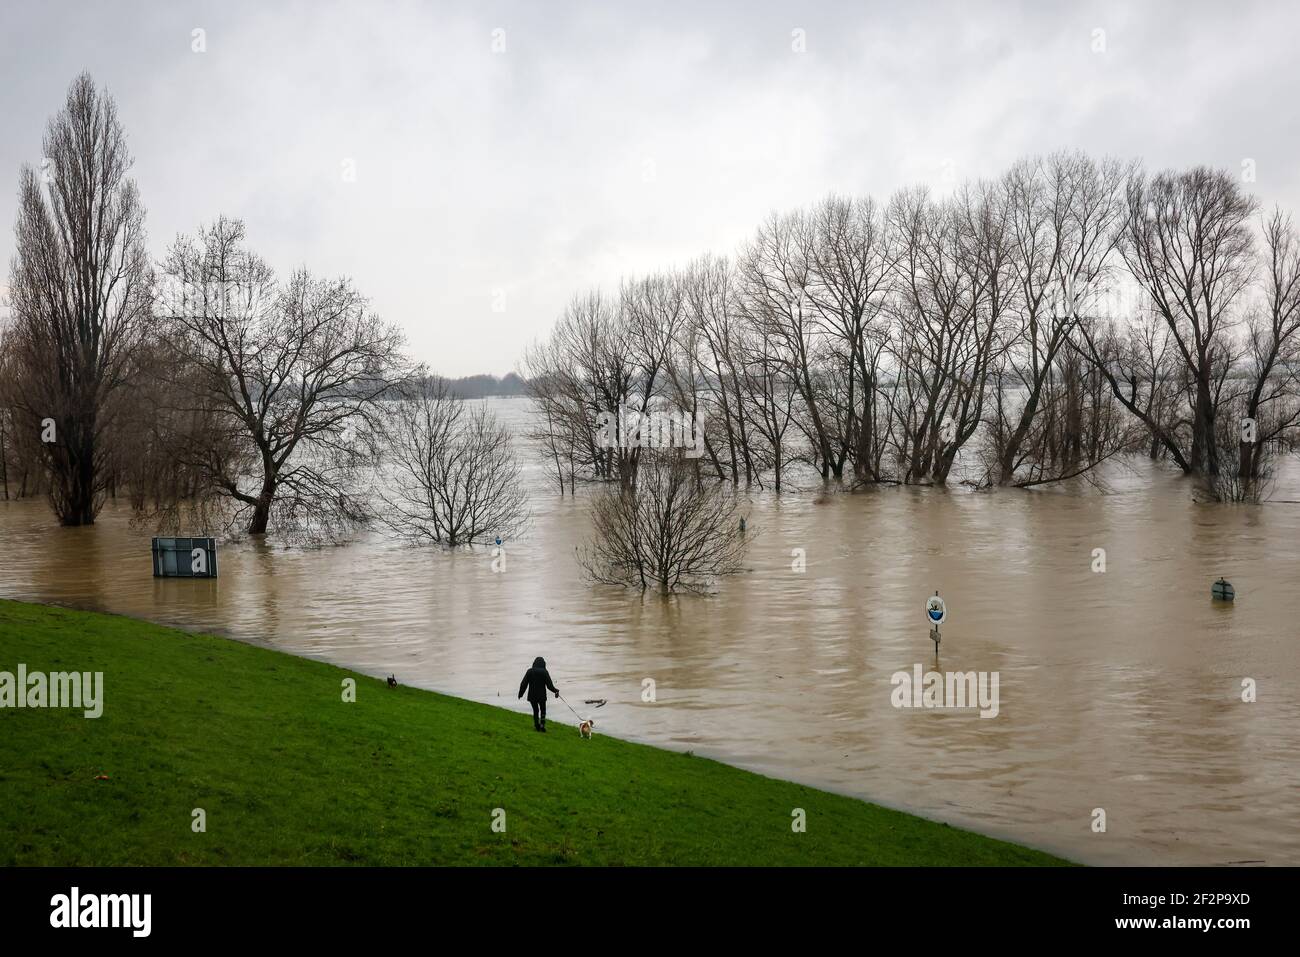 Duisburg, Renania del Norte-Westfalia, Alemania - inundaciones en el Rin, los árboles en el dique en el distrito de Marxloh están bajo el agua. Foto de stock